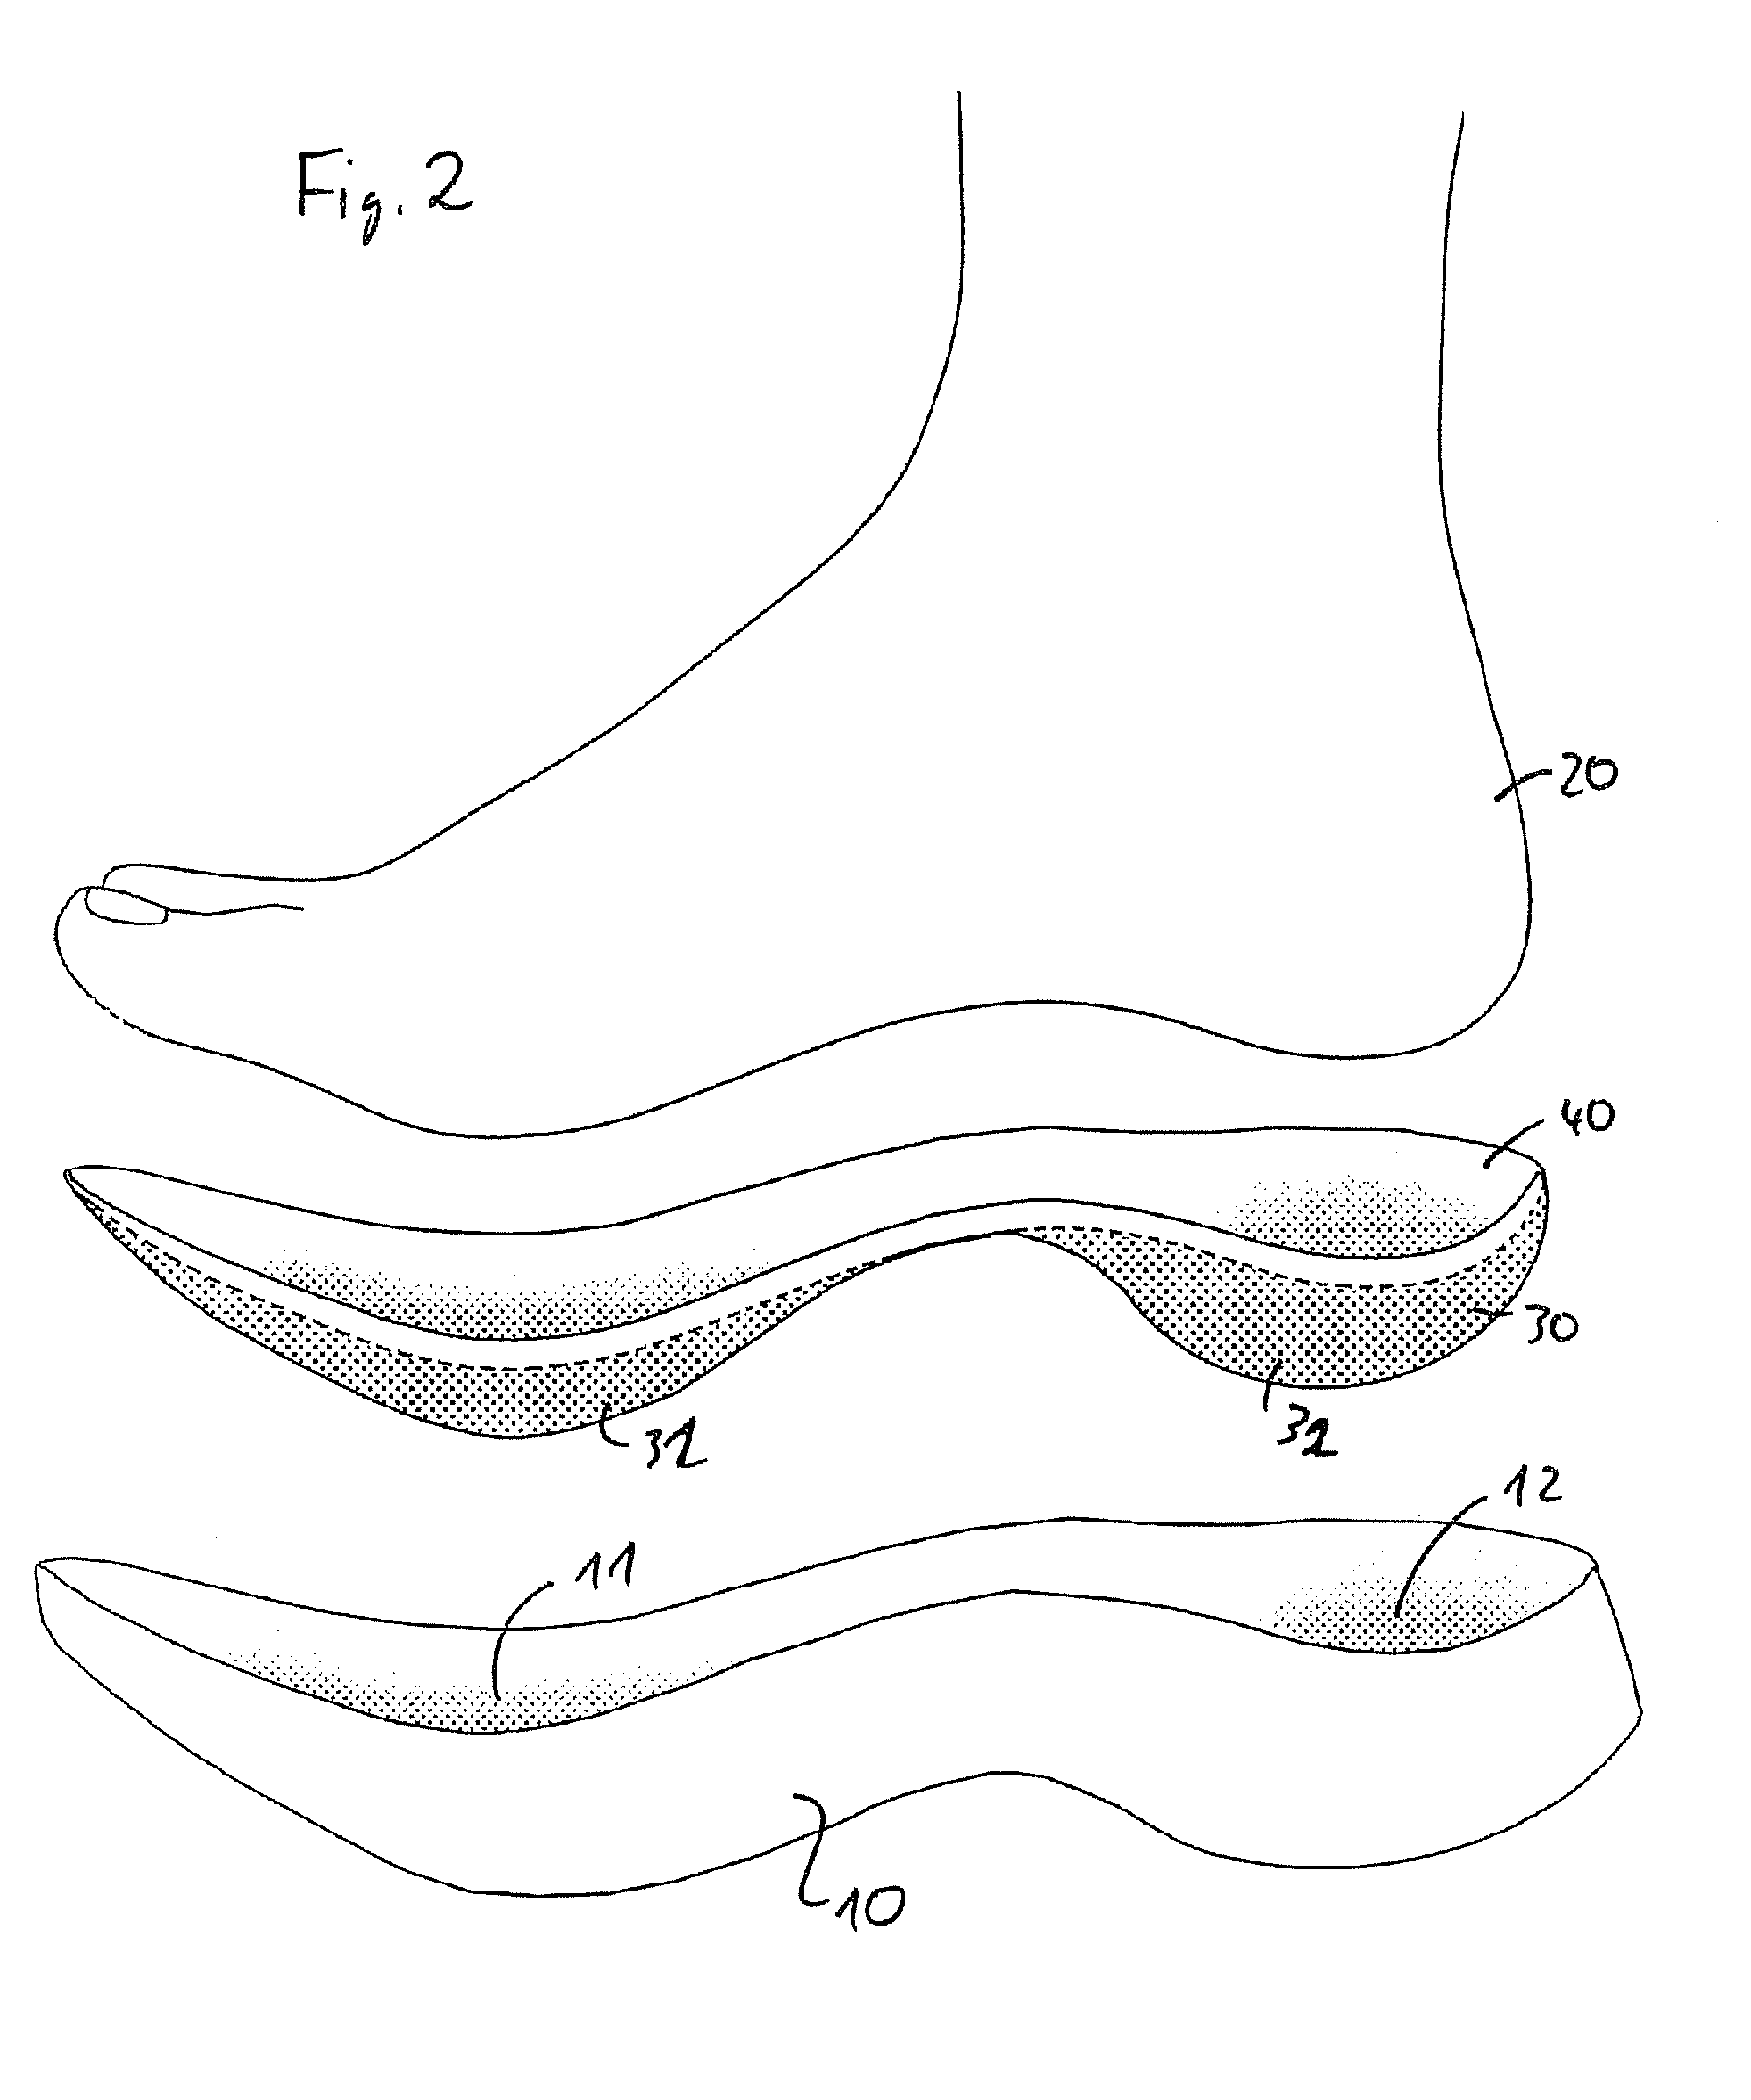 Shoe sole element